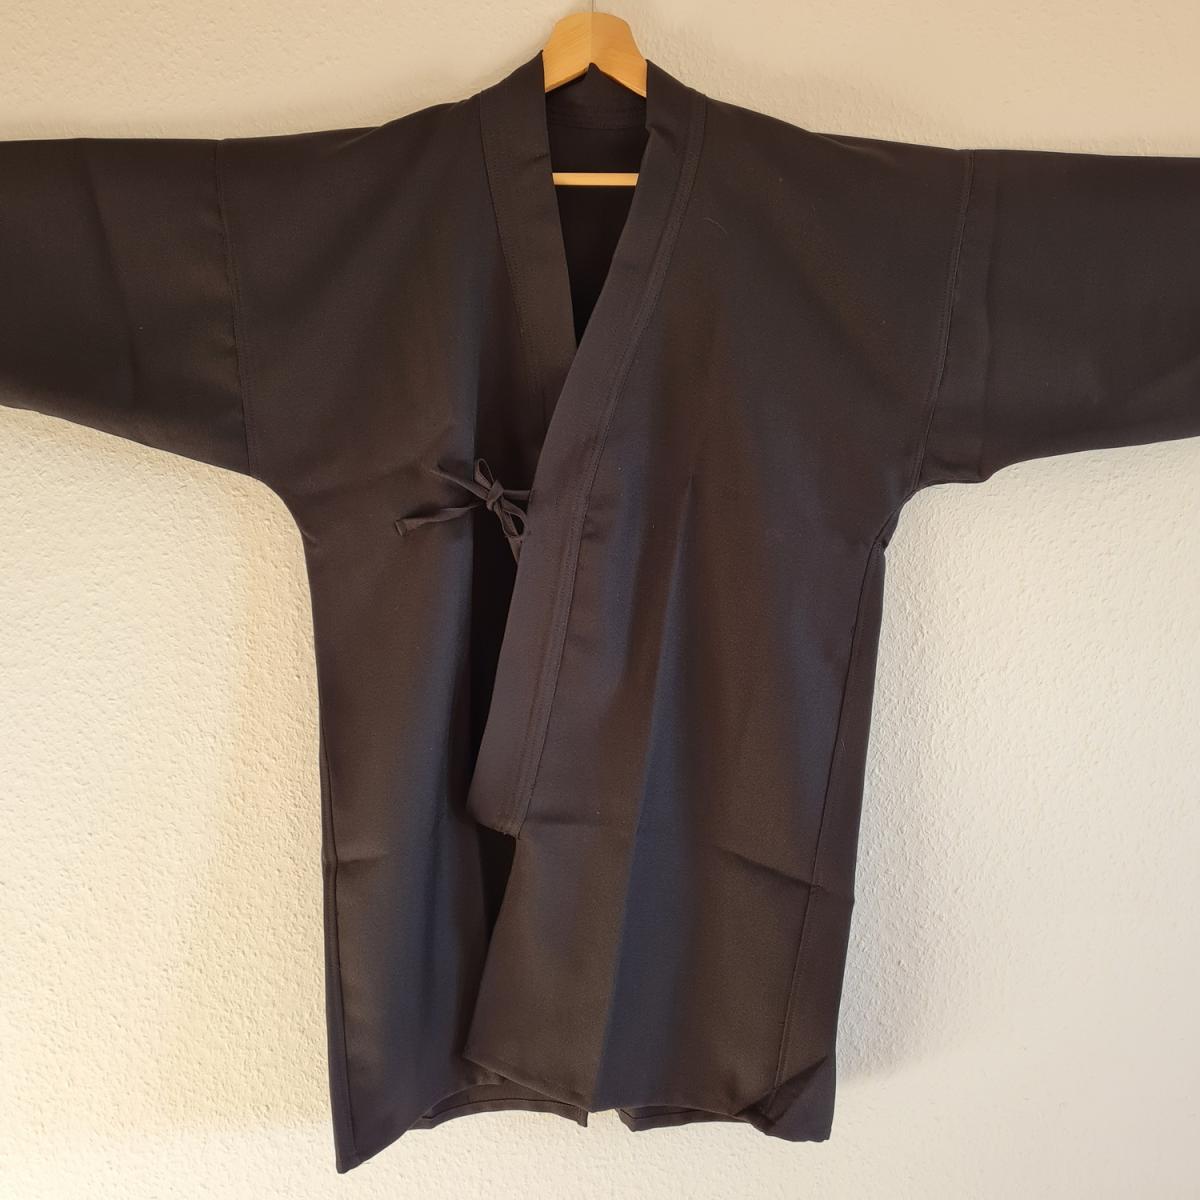 Gi aus Gabardine schwarz - Körpergröße 180 cm ➤www.bokken-shop.de. Passende Bekleidung für Aikido, Iaido, Kendo, Jodo. Dein Budo-Fachhändler!